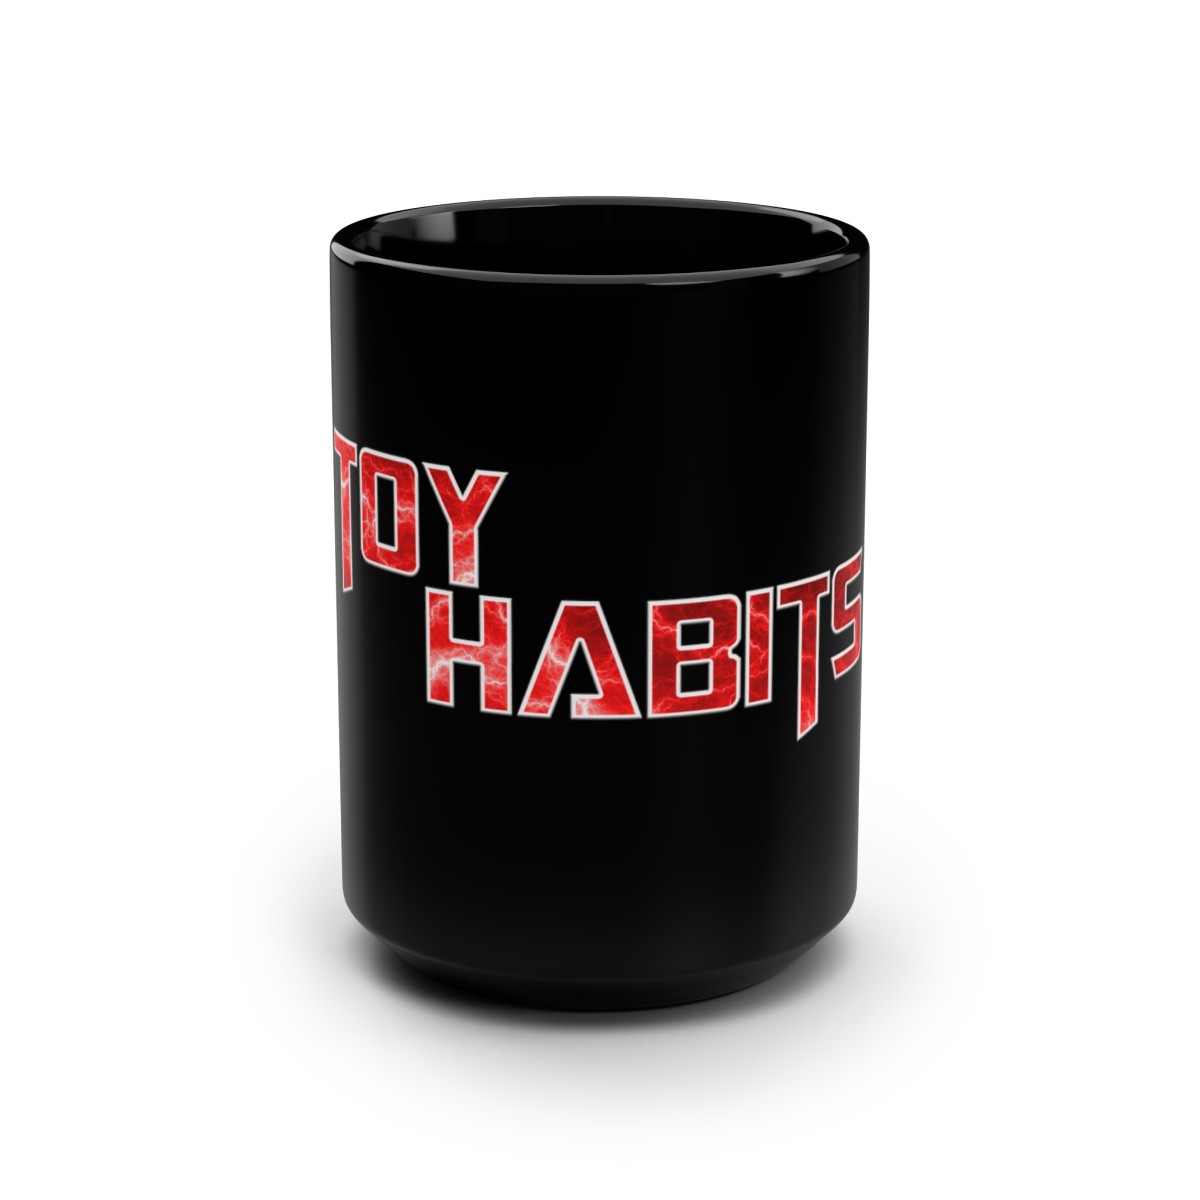 Toy Habits Mug, 15oz product thumbnail image